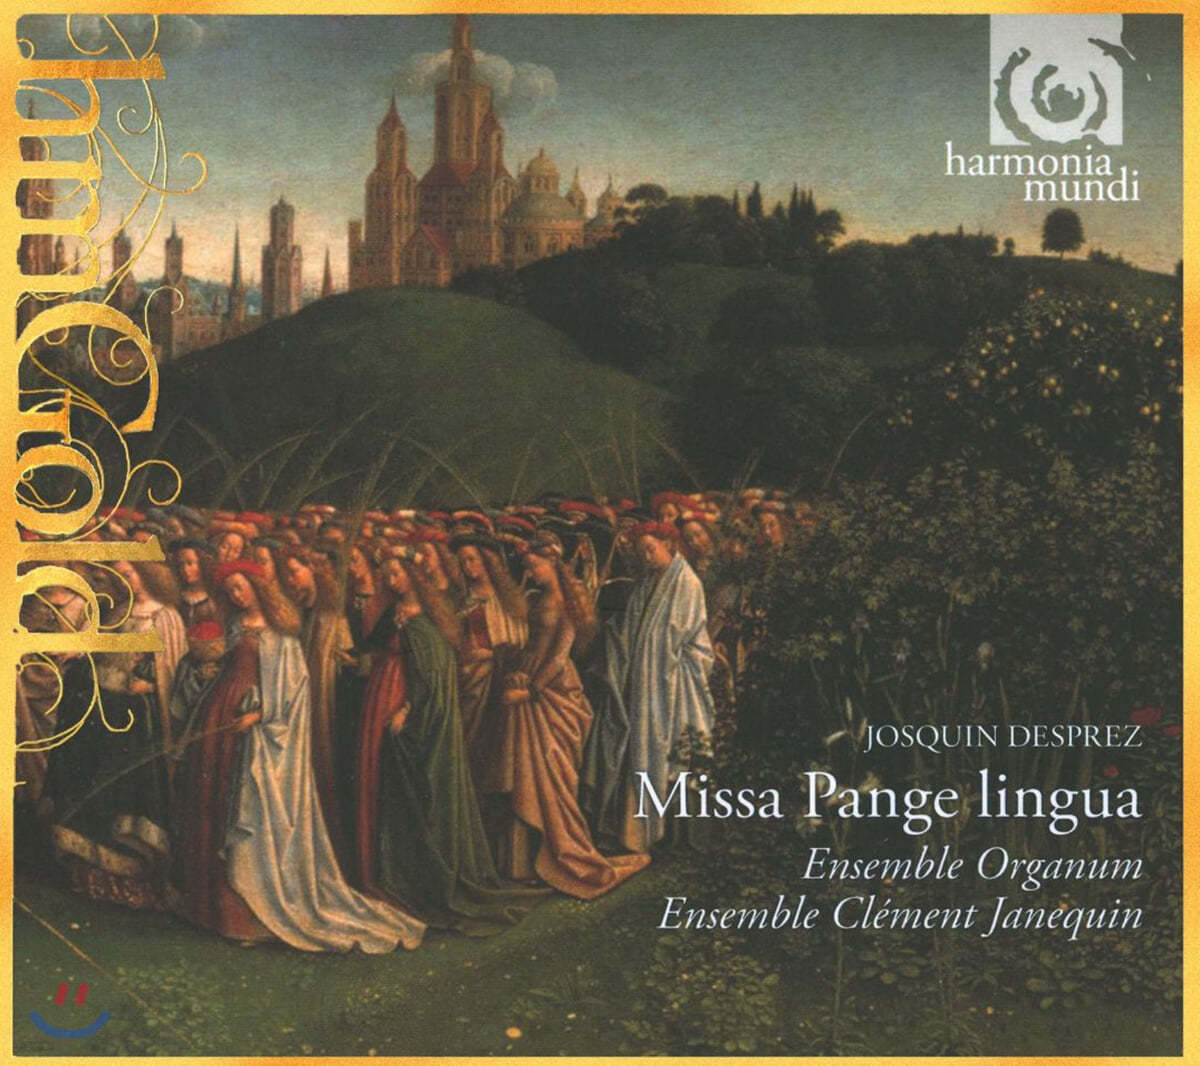 Marcel Peres 데프레 : 미사 '팡게 링구아' (Josquin Desprez : Missa 'Pange Lingua')